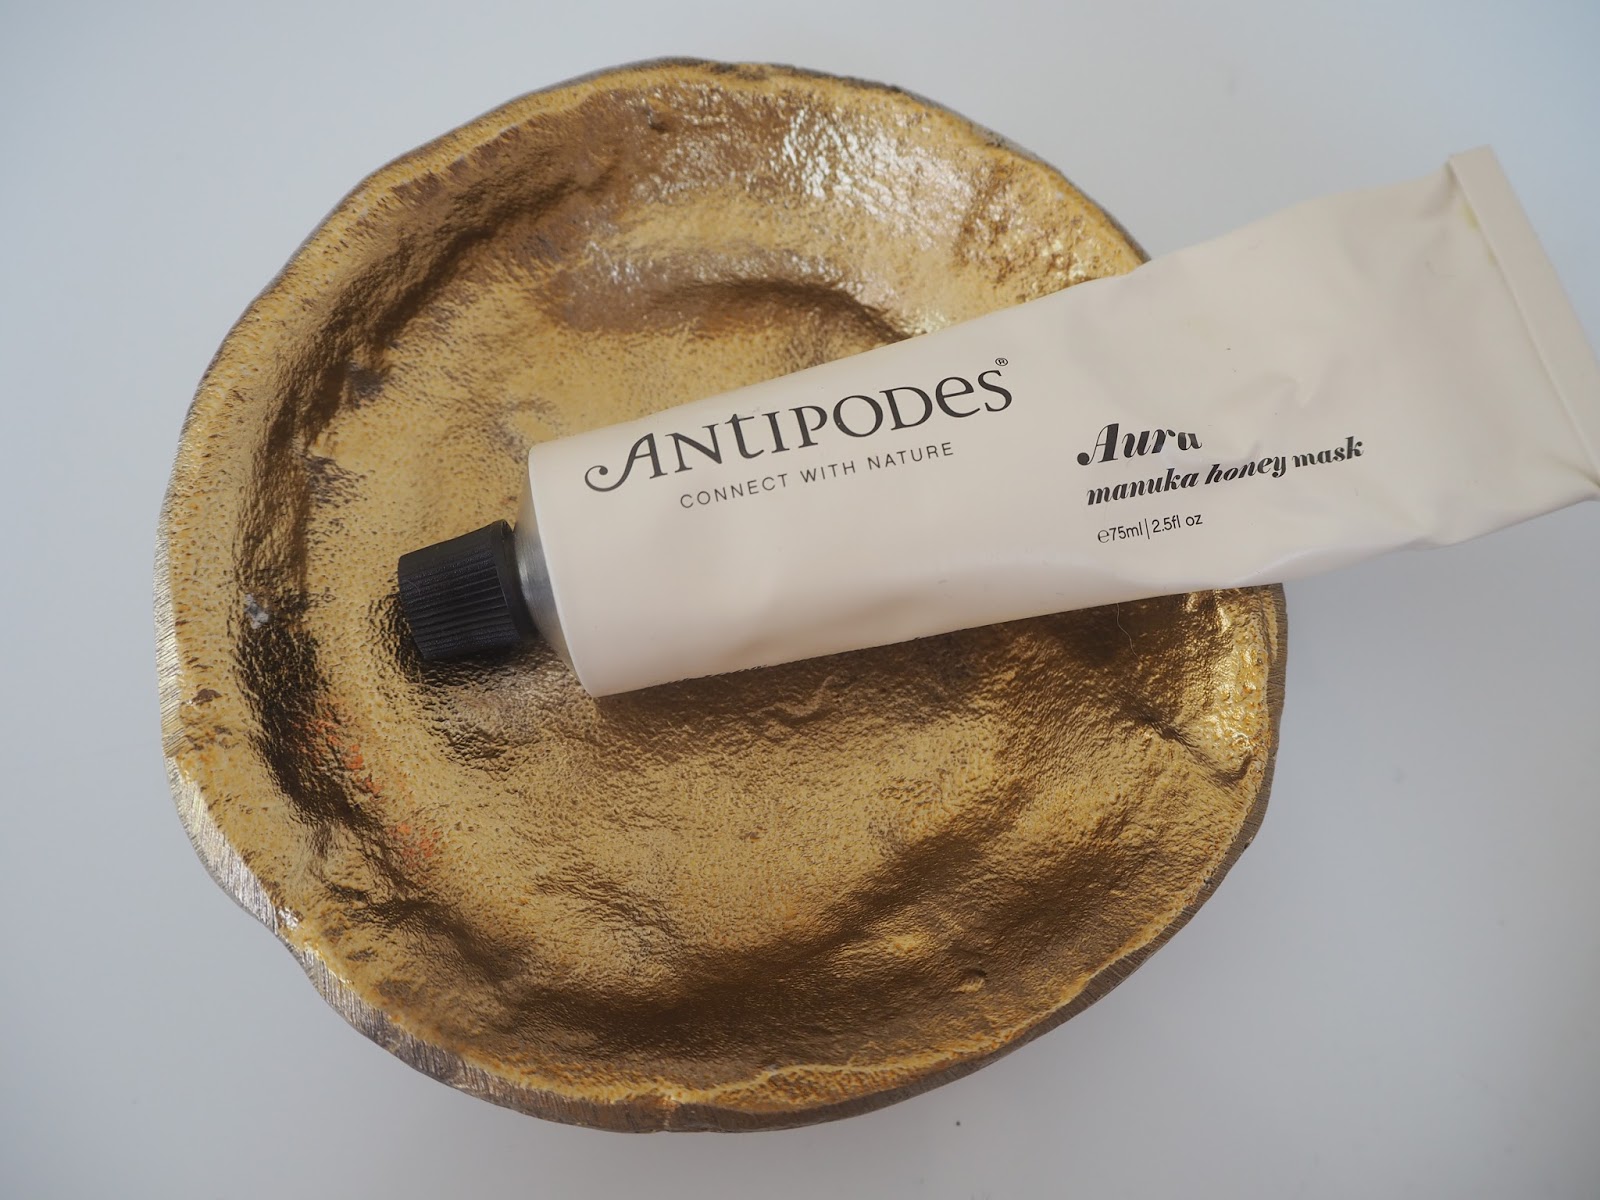 Antipodes Aura Manuka Honey Mask review